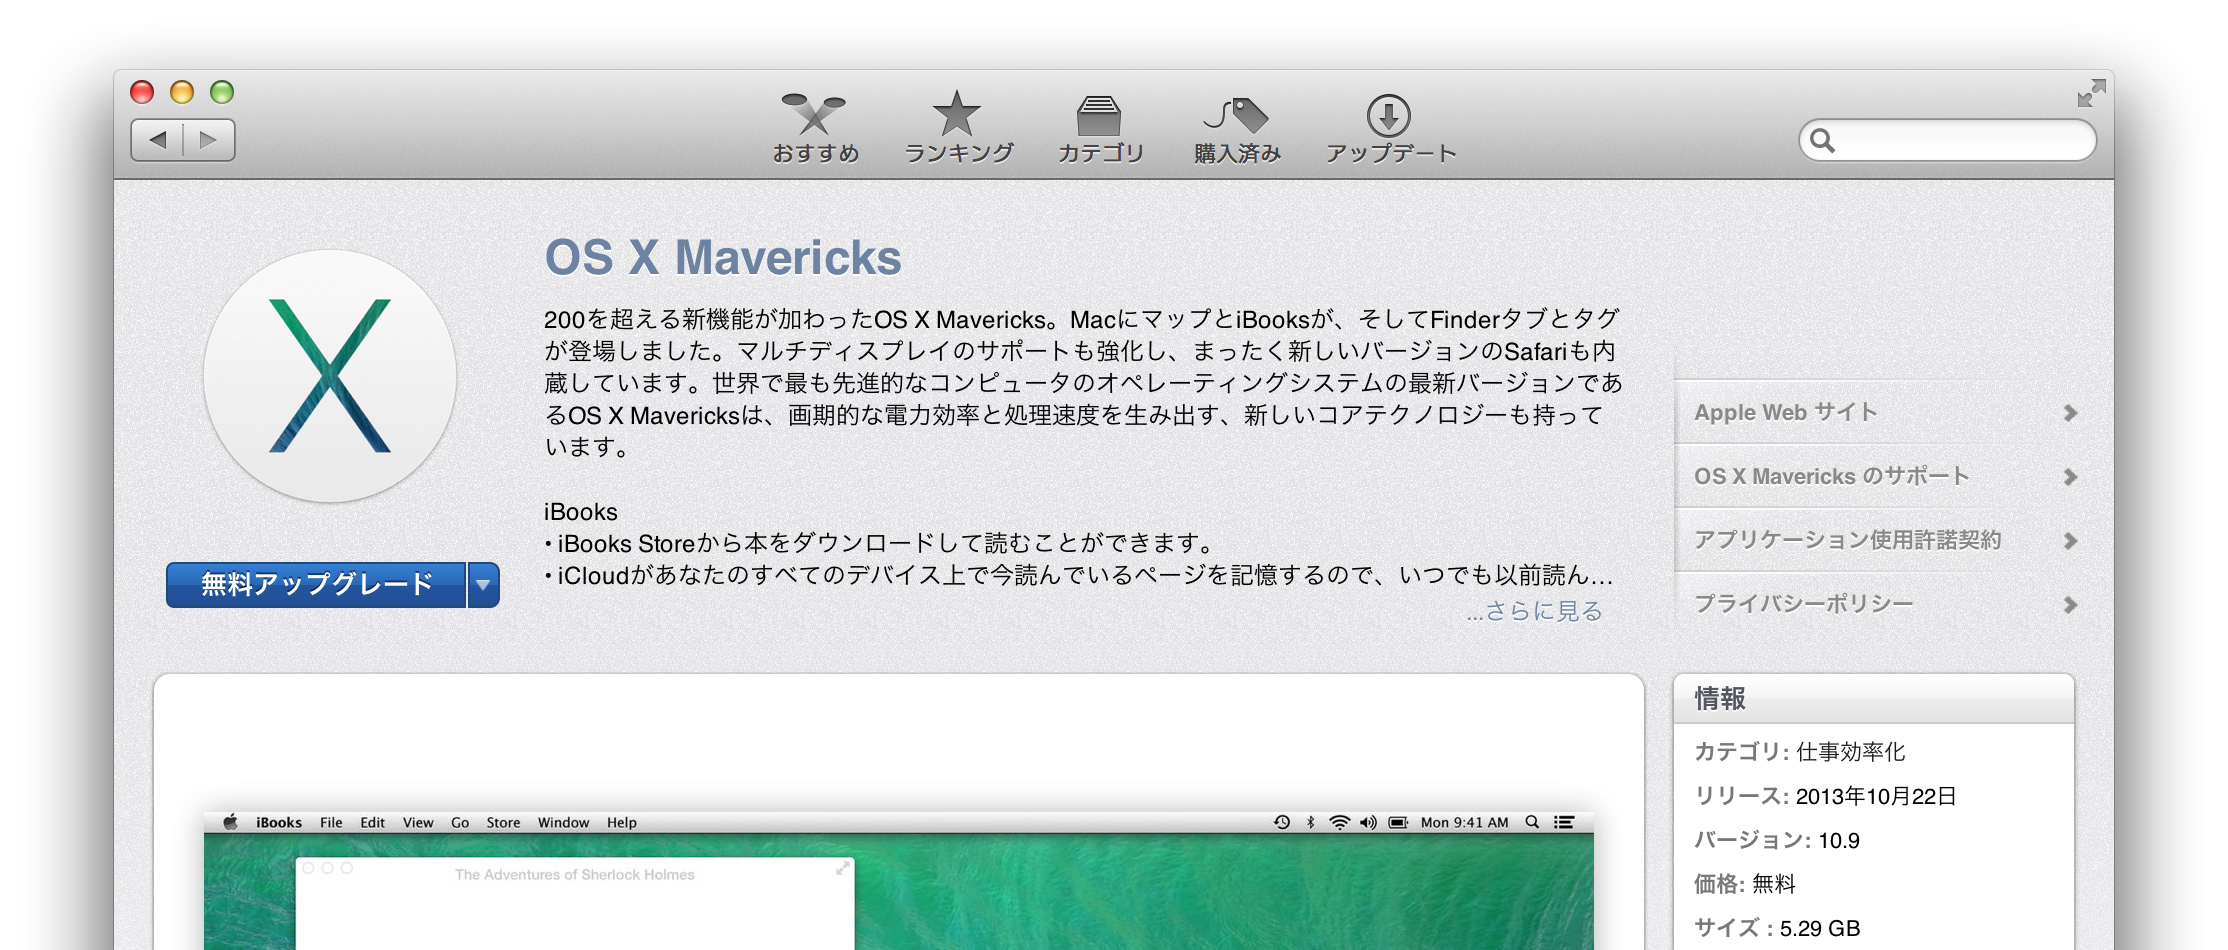 Mac向けに新os Os X Mavericks 公開 無料ダウンロード可能に ガジェットショット